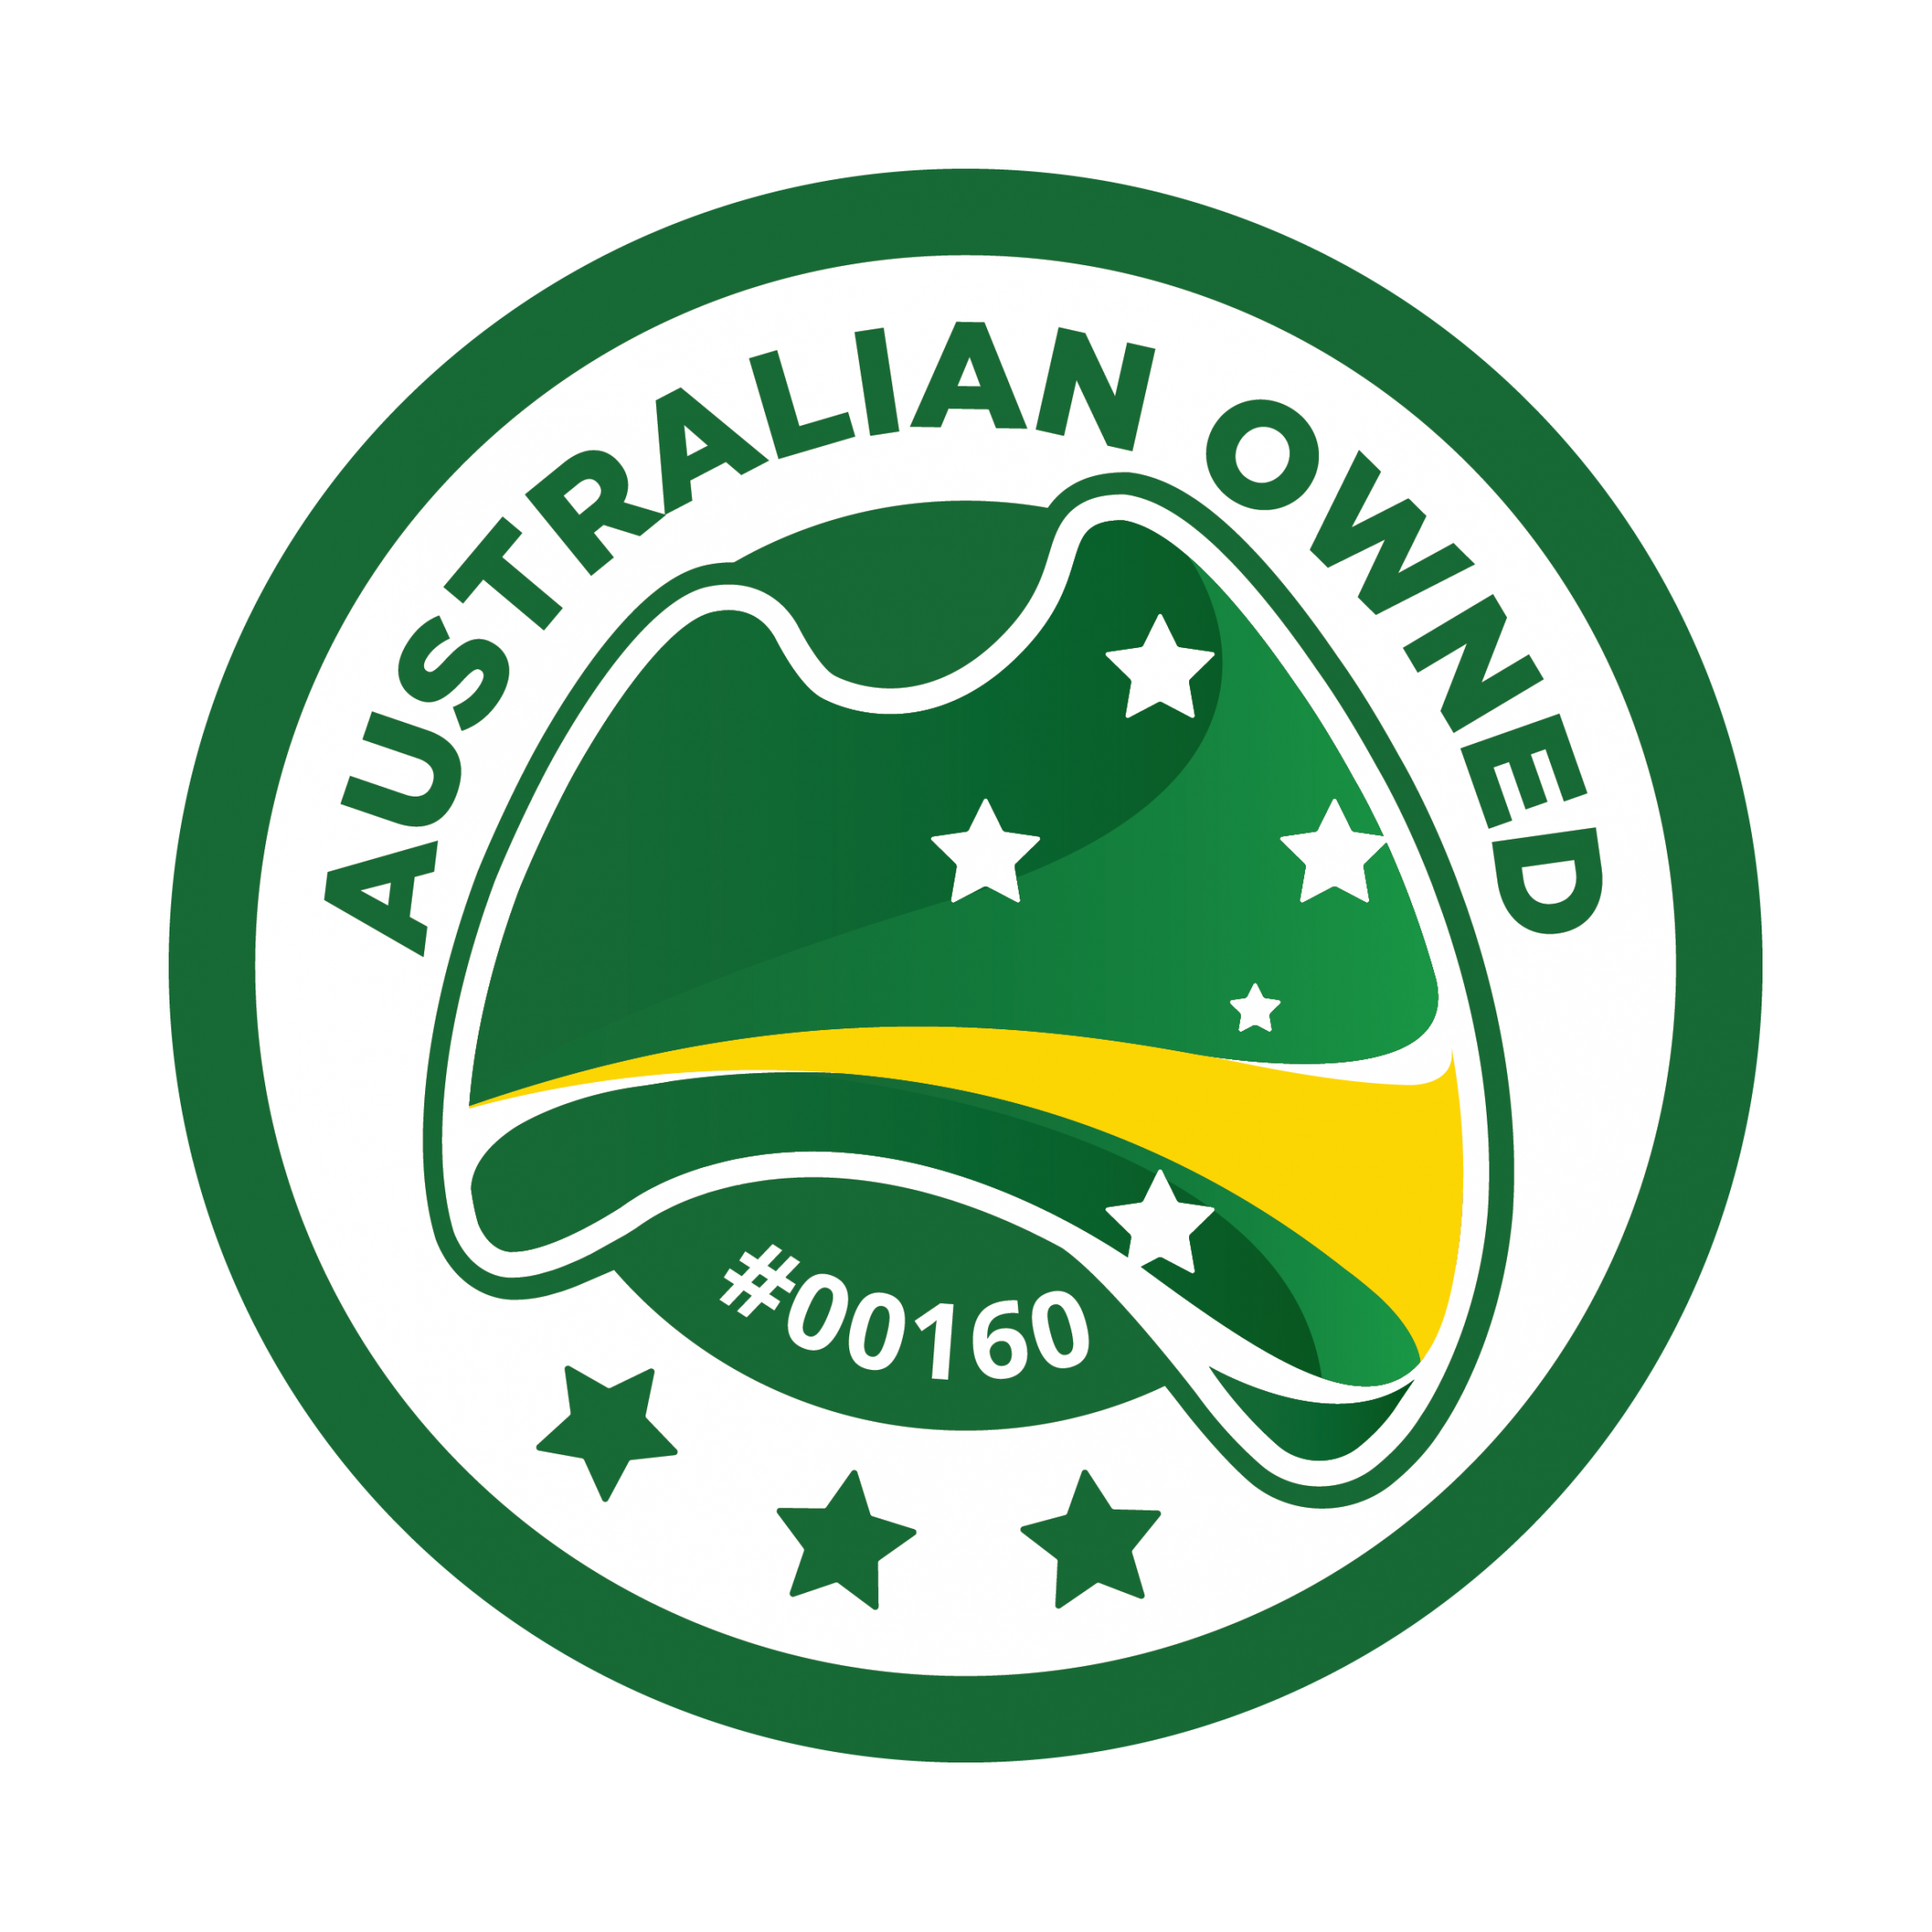 Australian Owned Badge